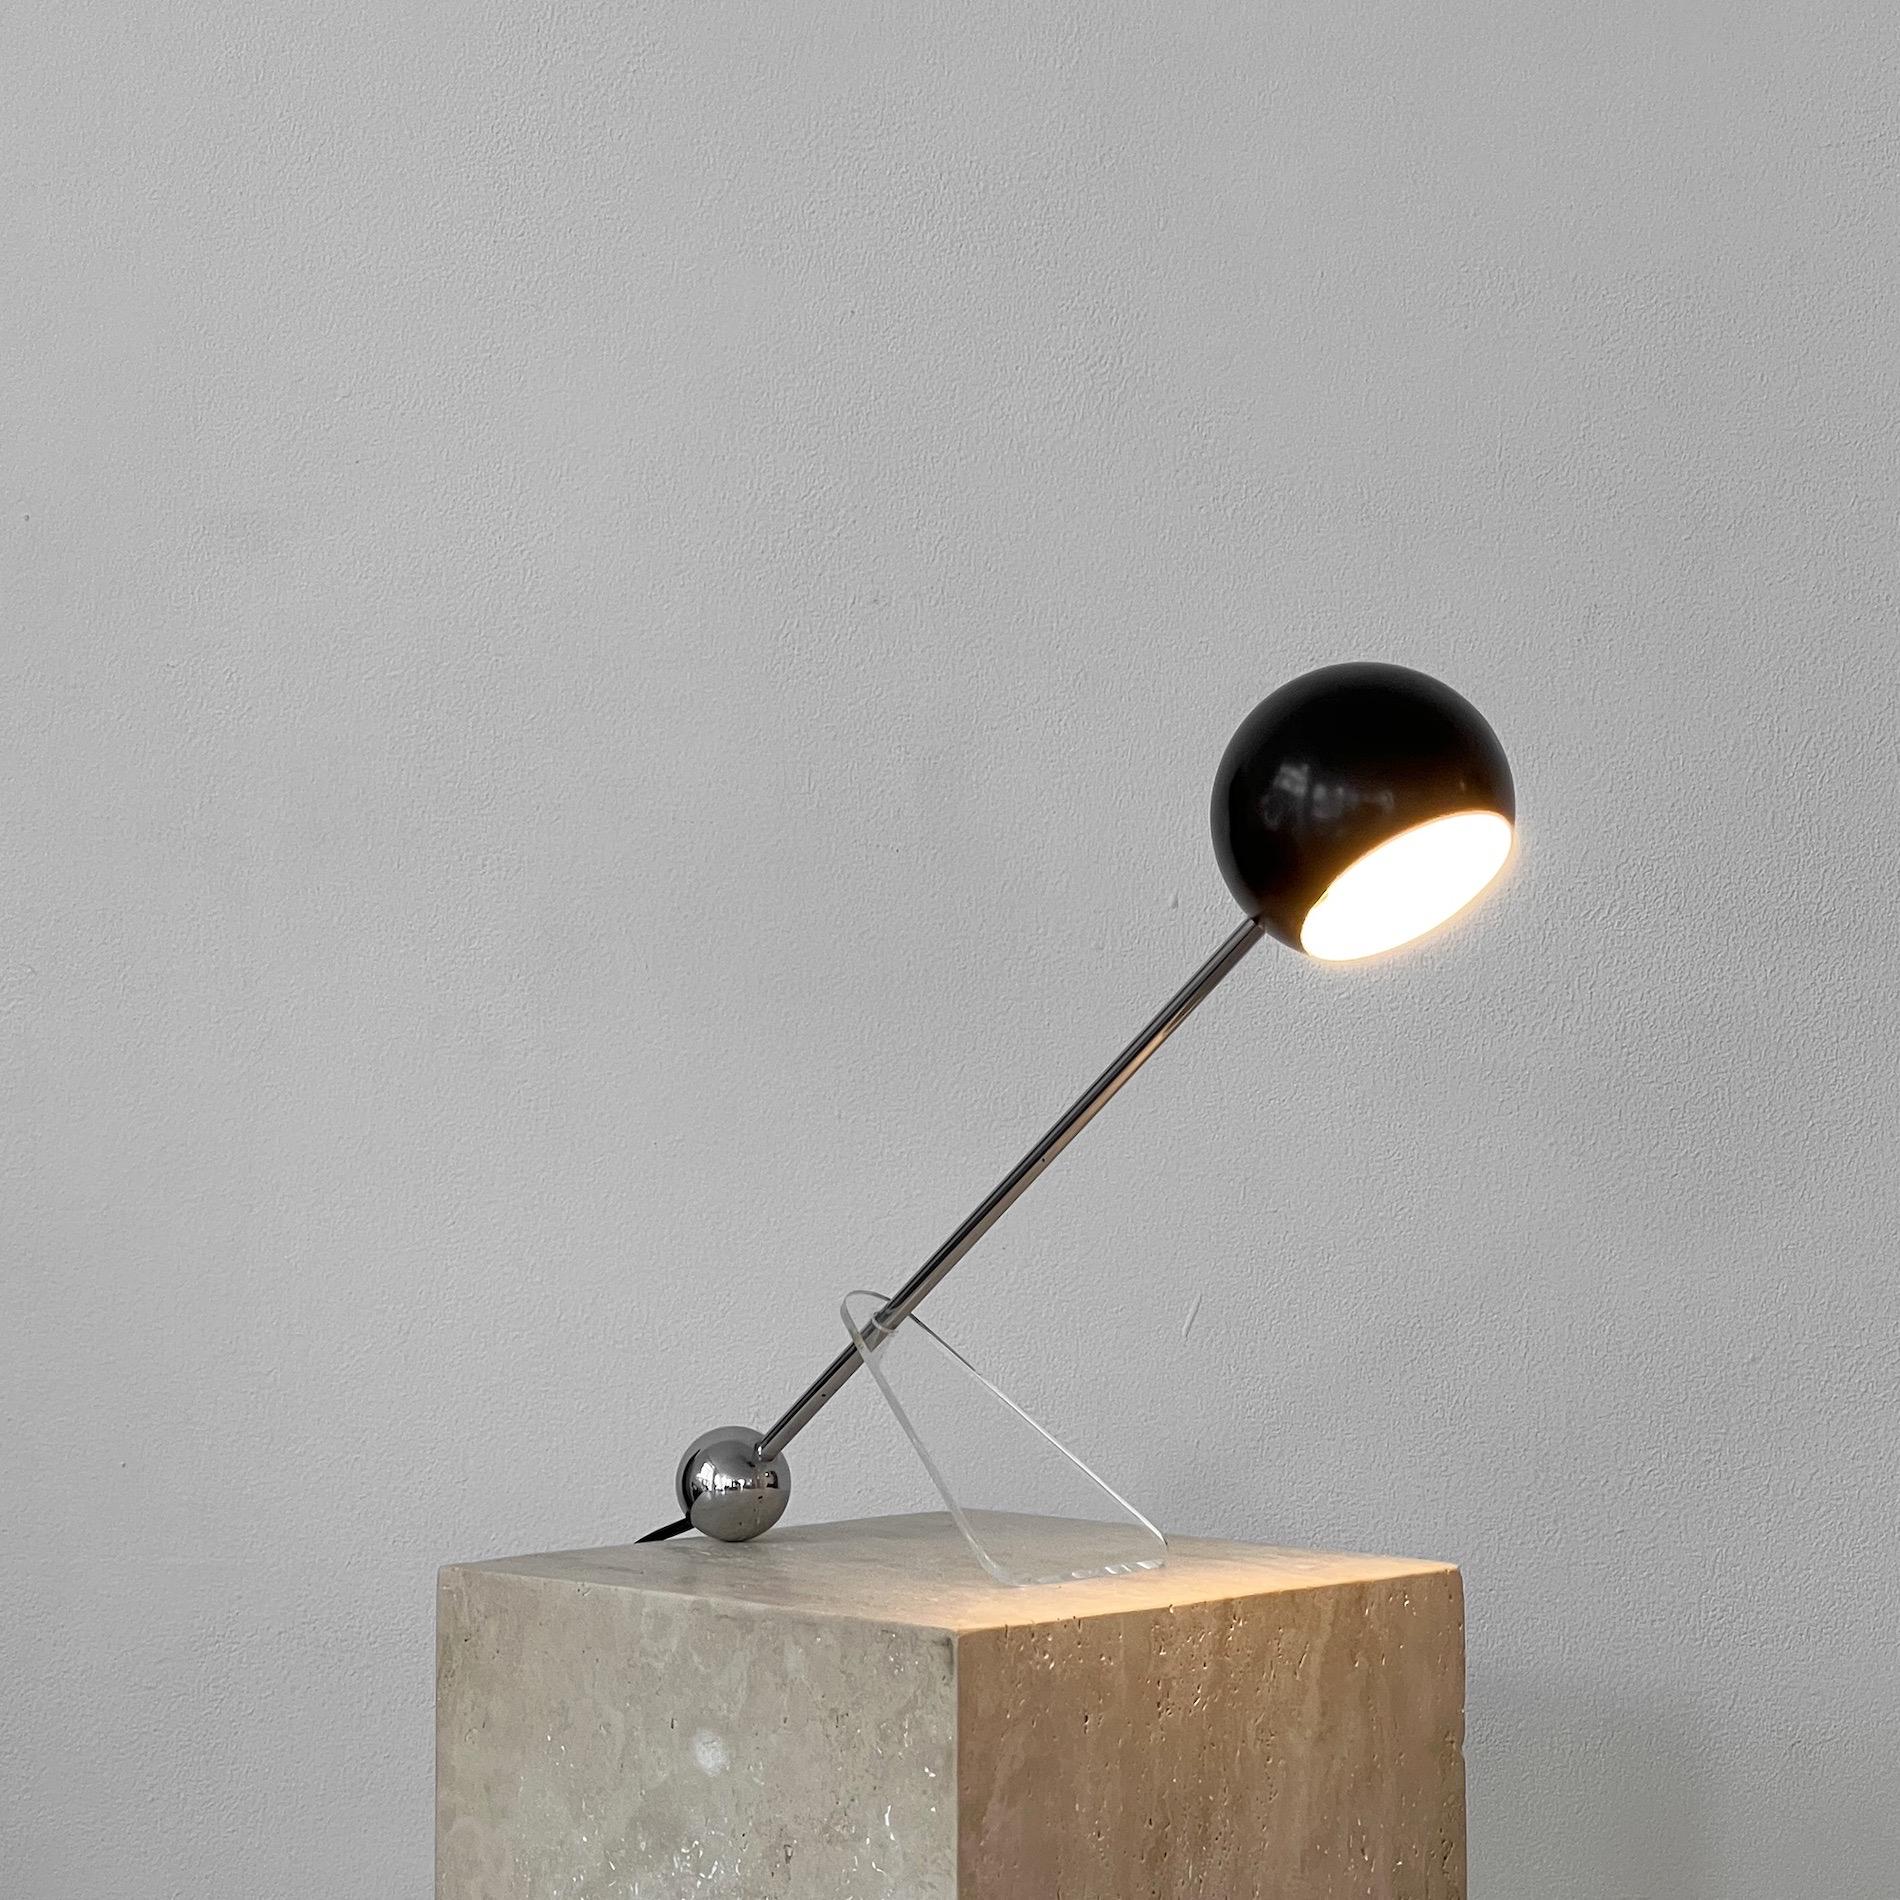 80s desk lamp